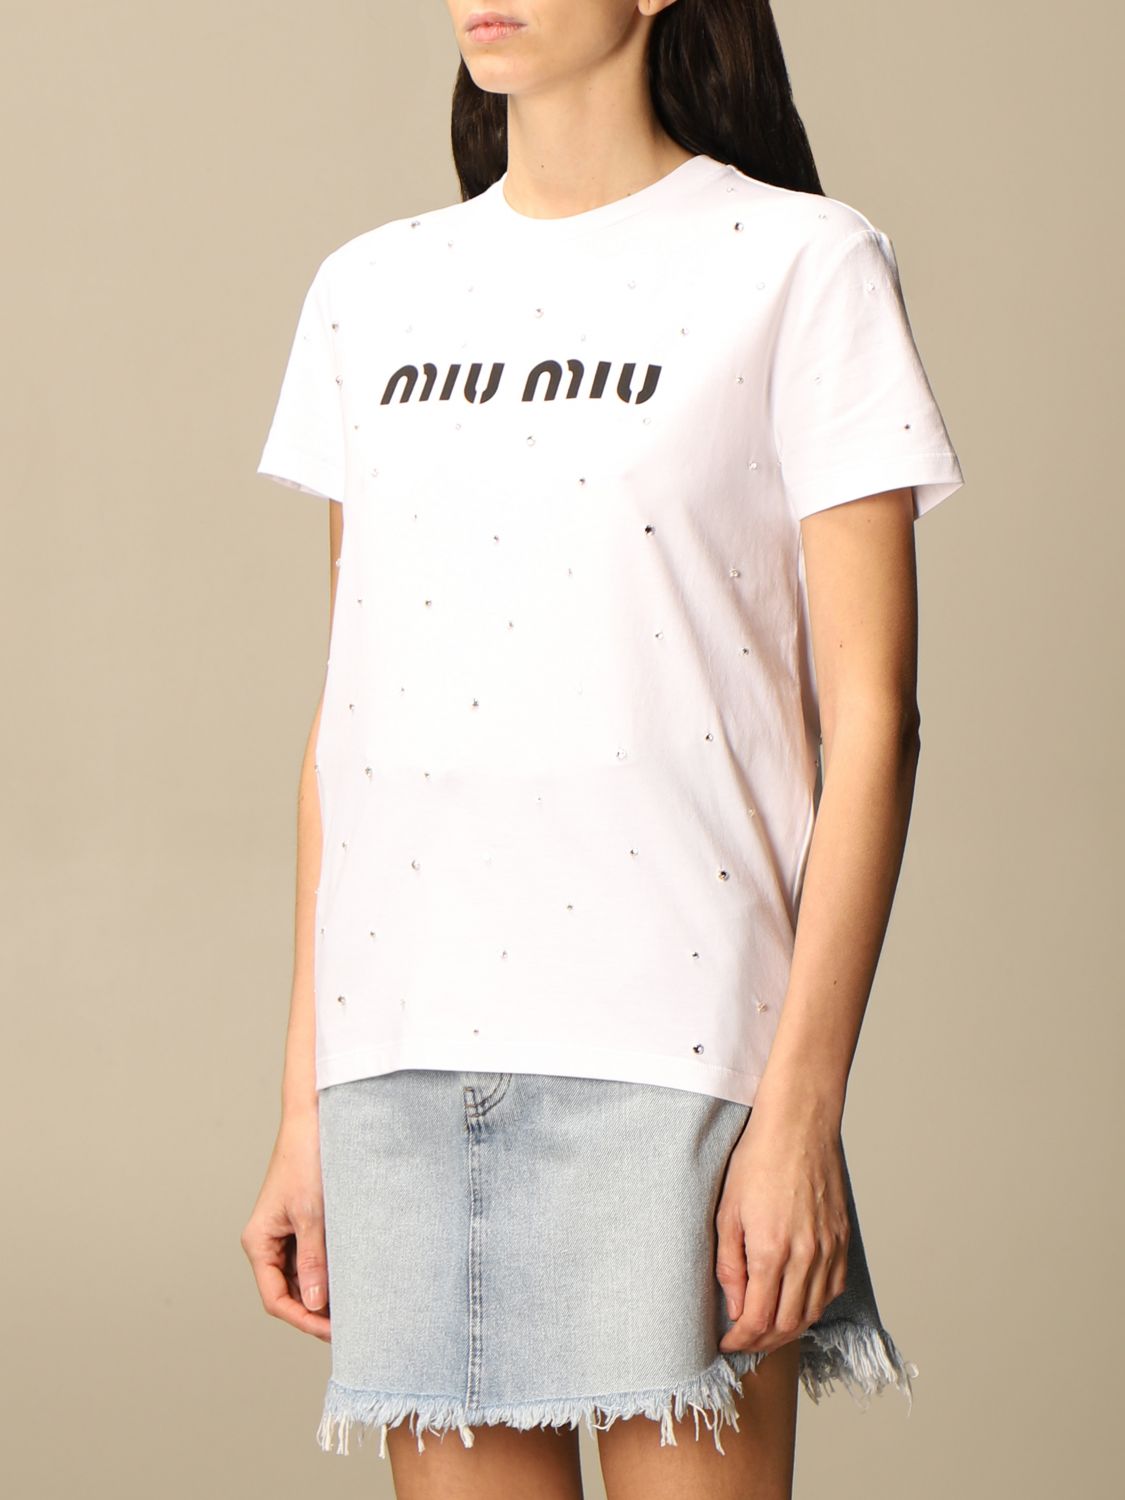 マルチボーダーシリーズ miumiu ビジュー付きトップス 半袖 Tシャツ